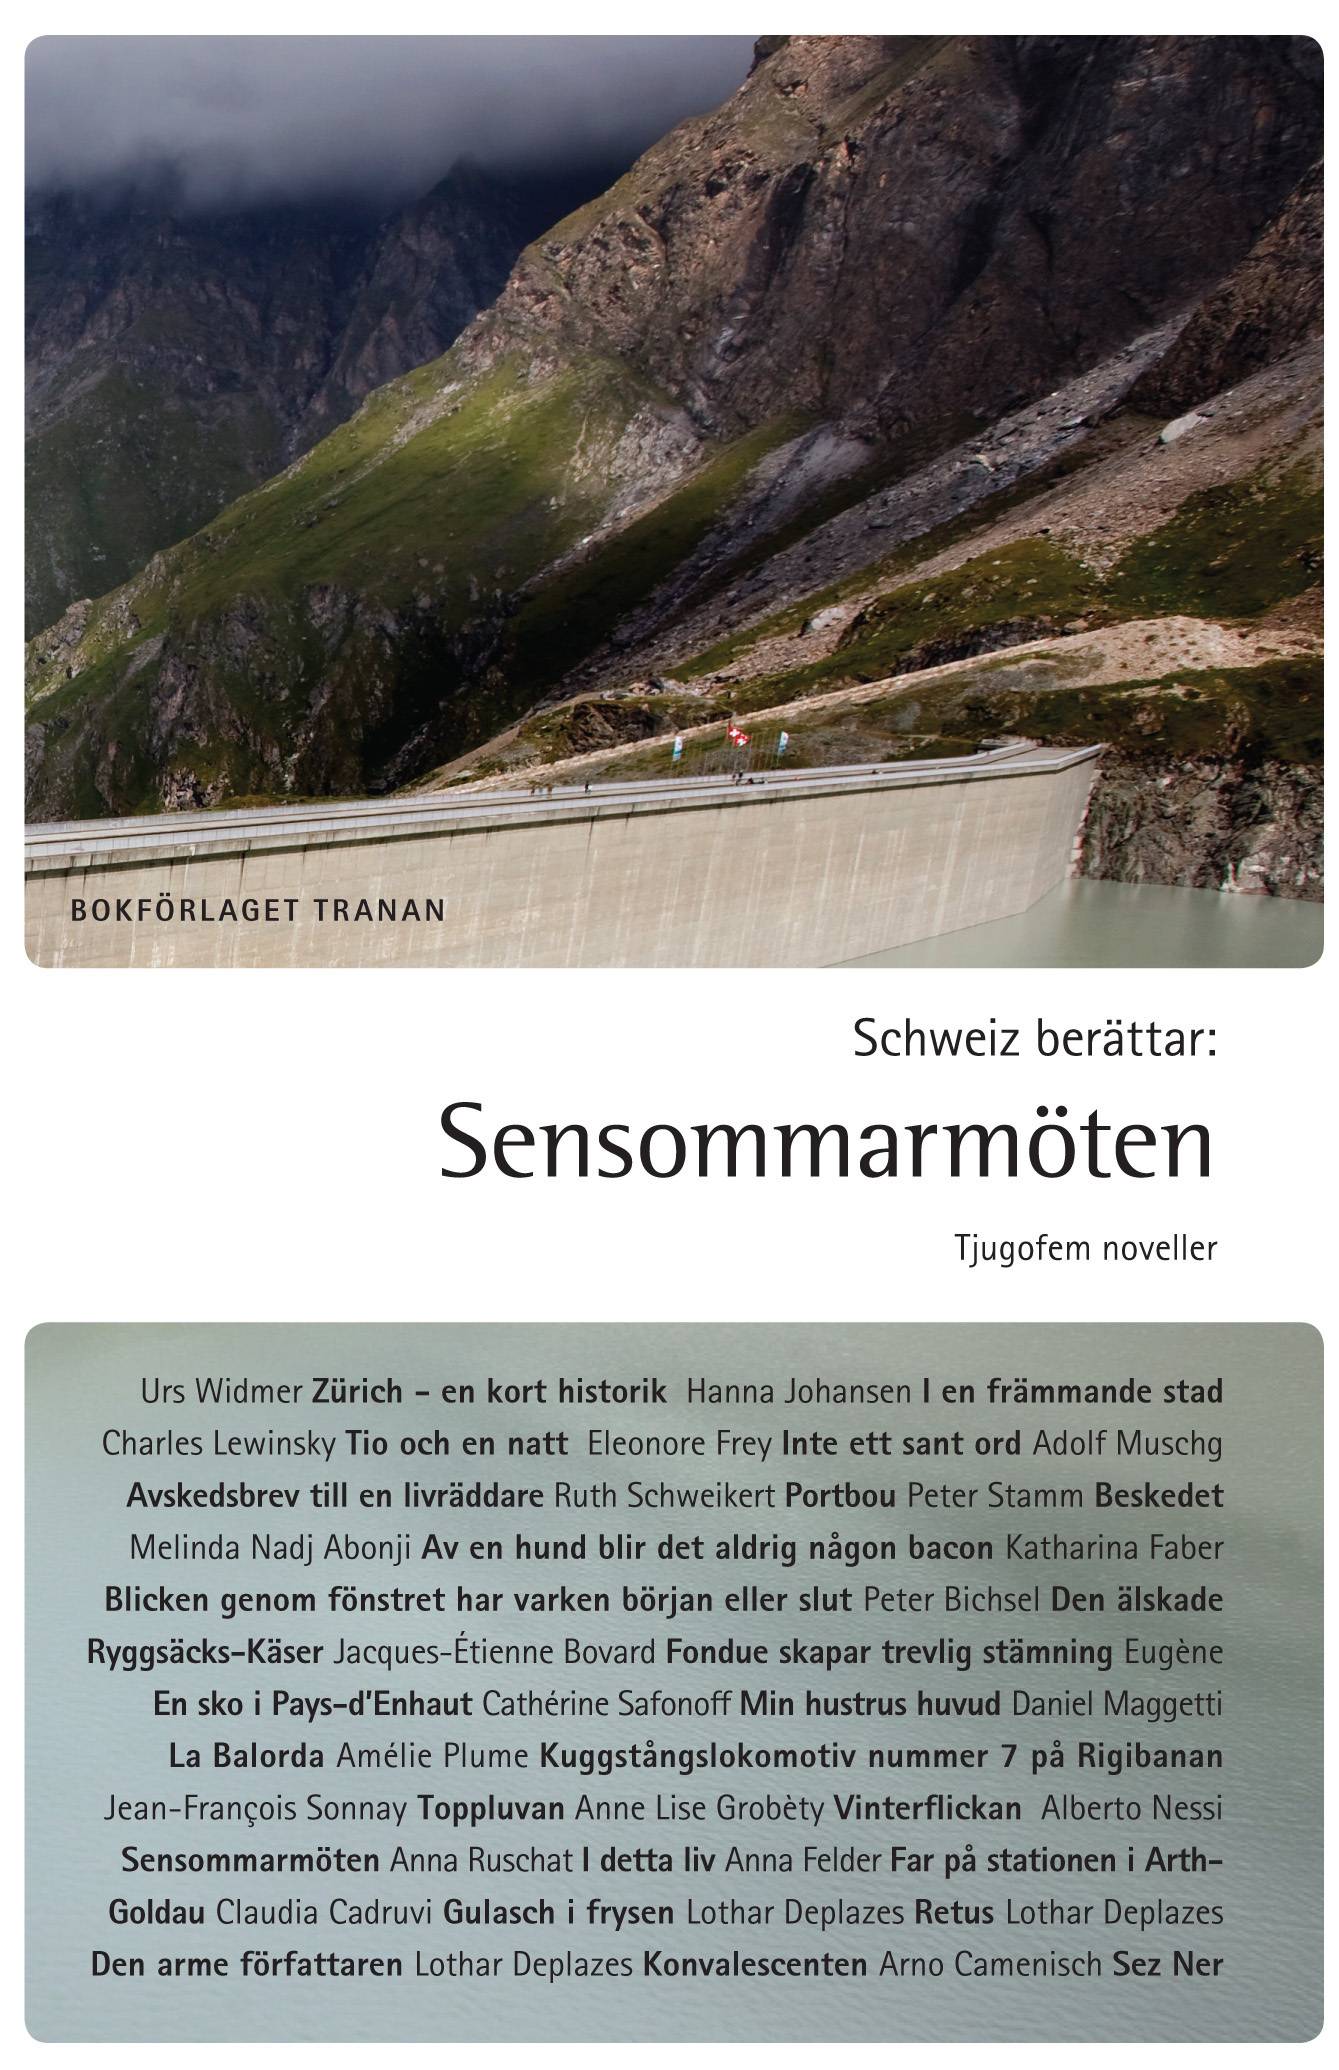 Schweiz berättar : sensommarmöten - tjugofem noveller